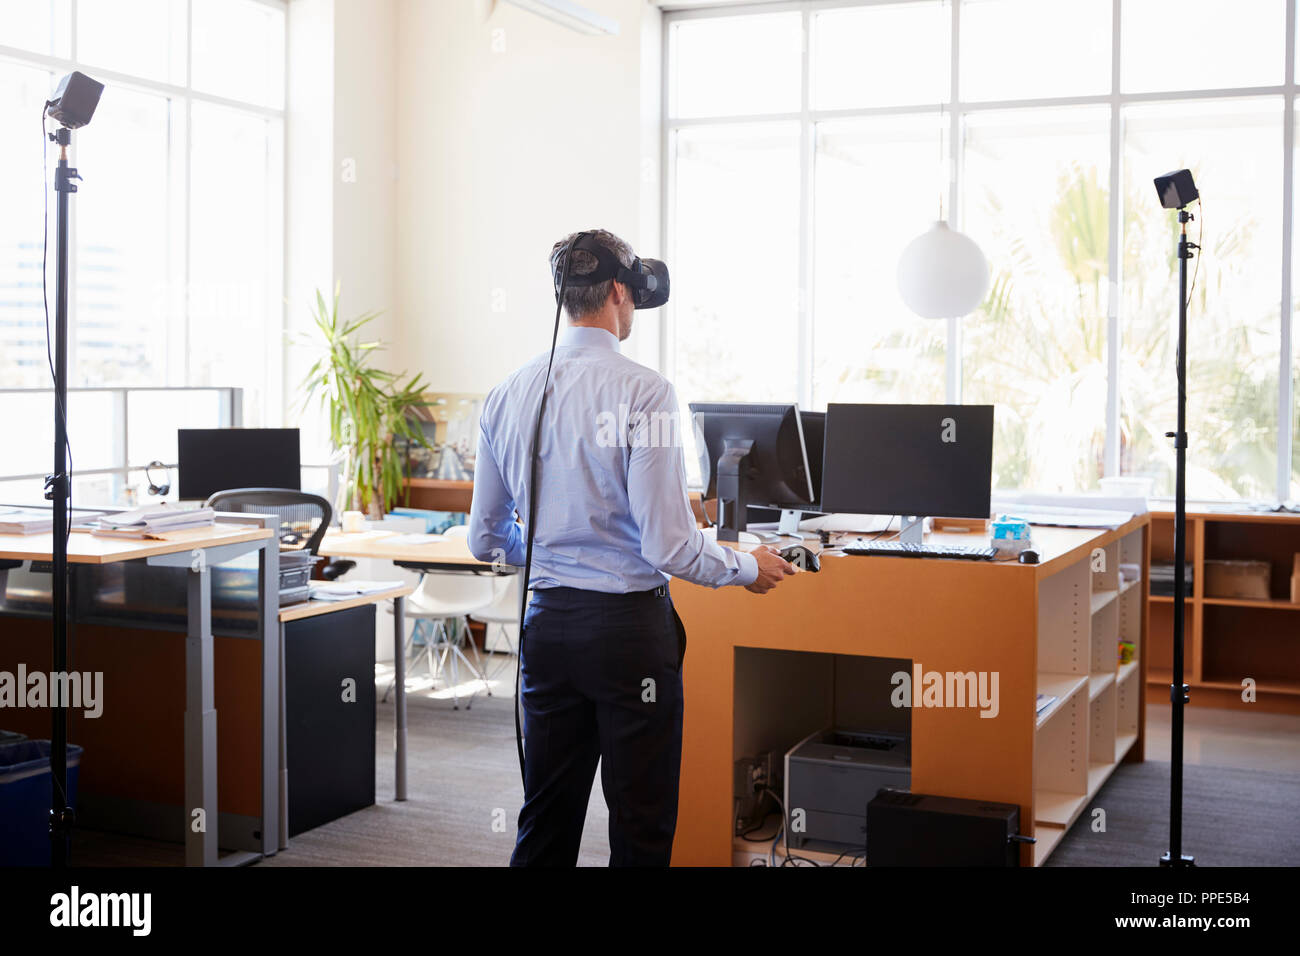 Portrait de la technologie VR dans un bureau, vue arrière Banque D'Images